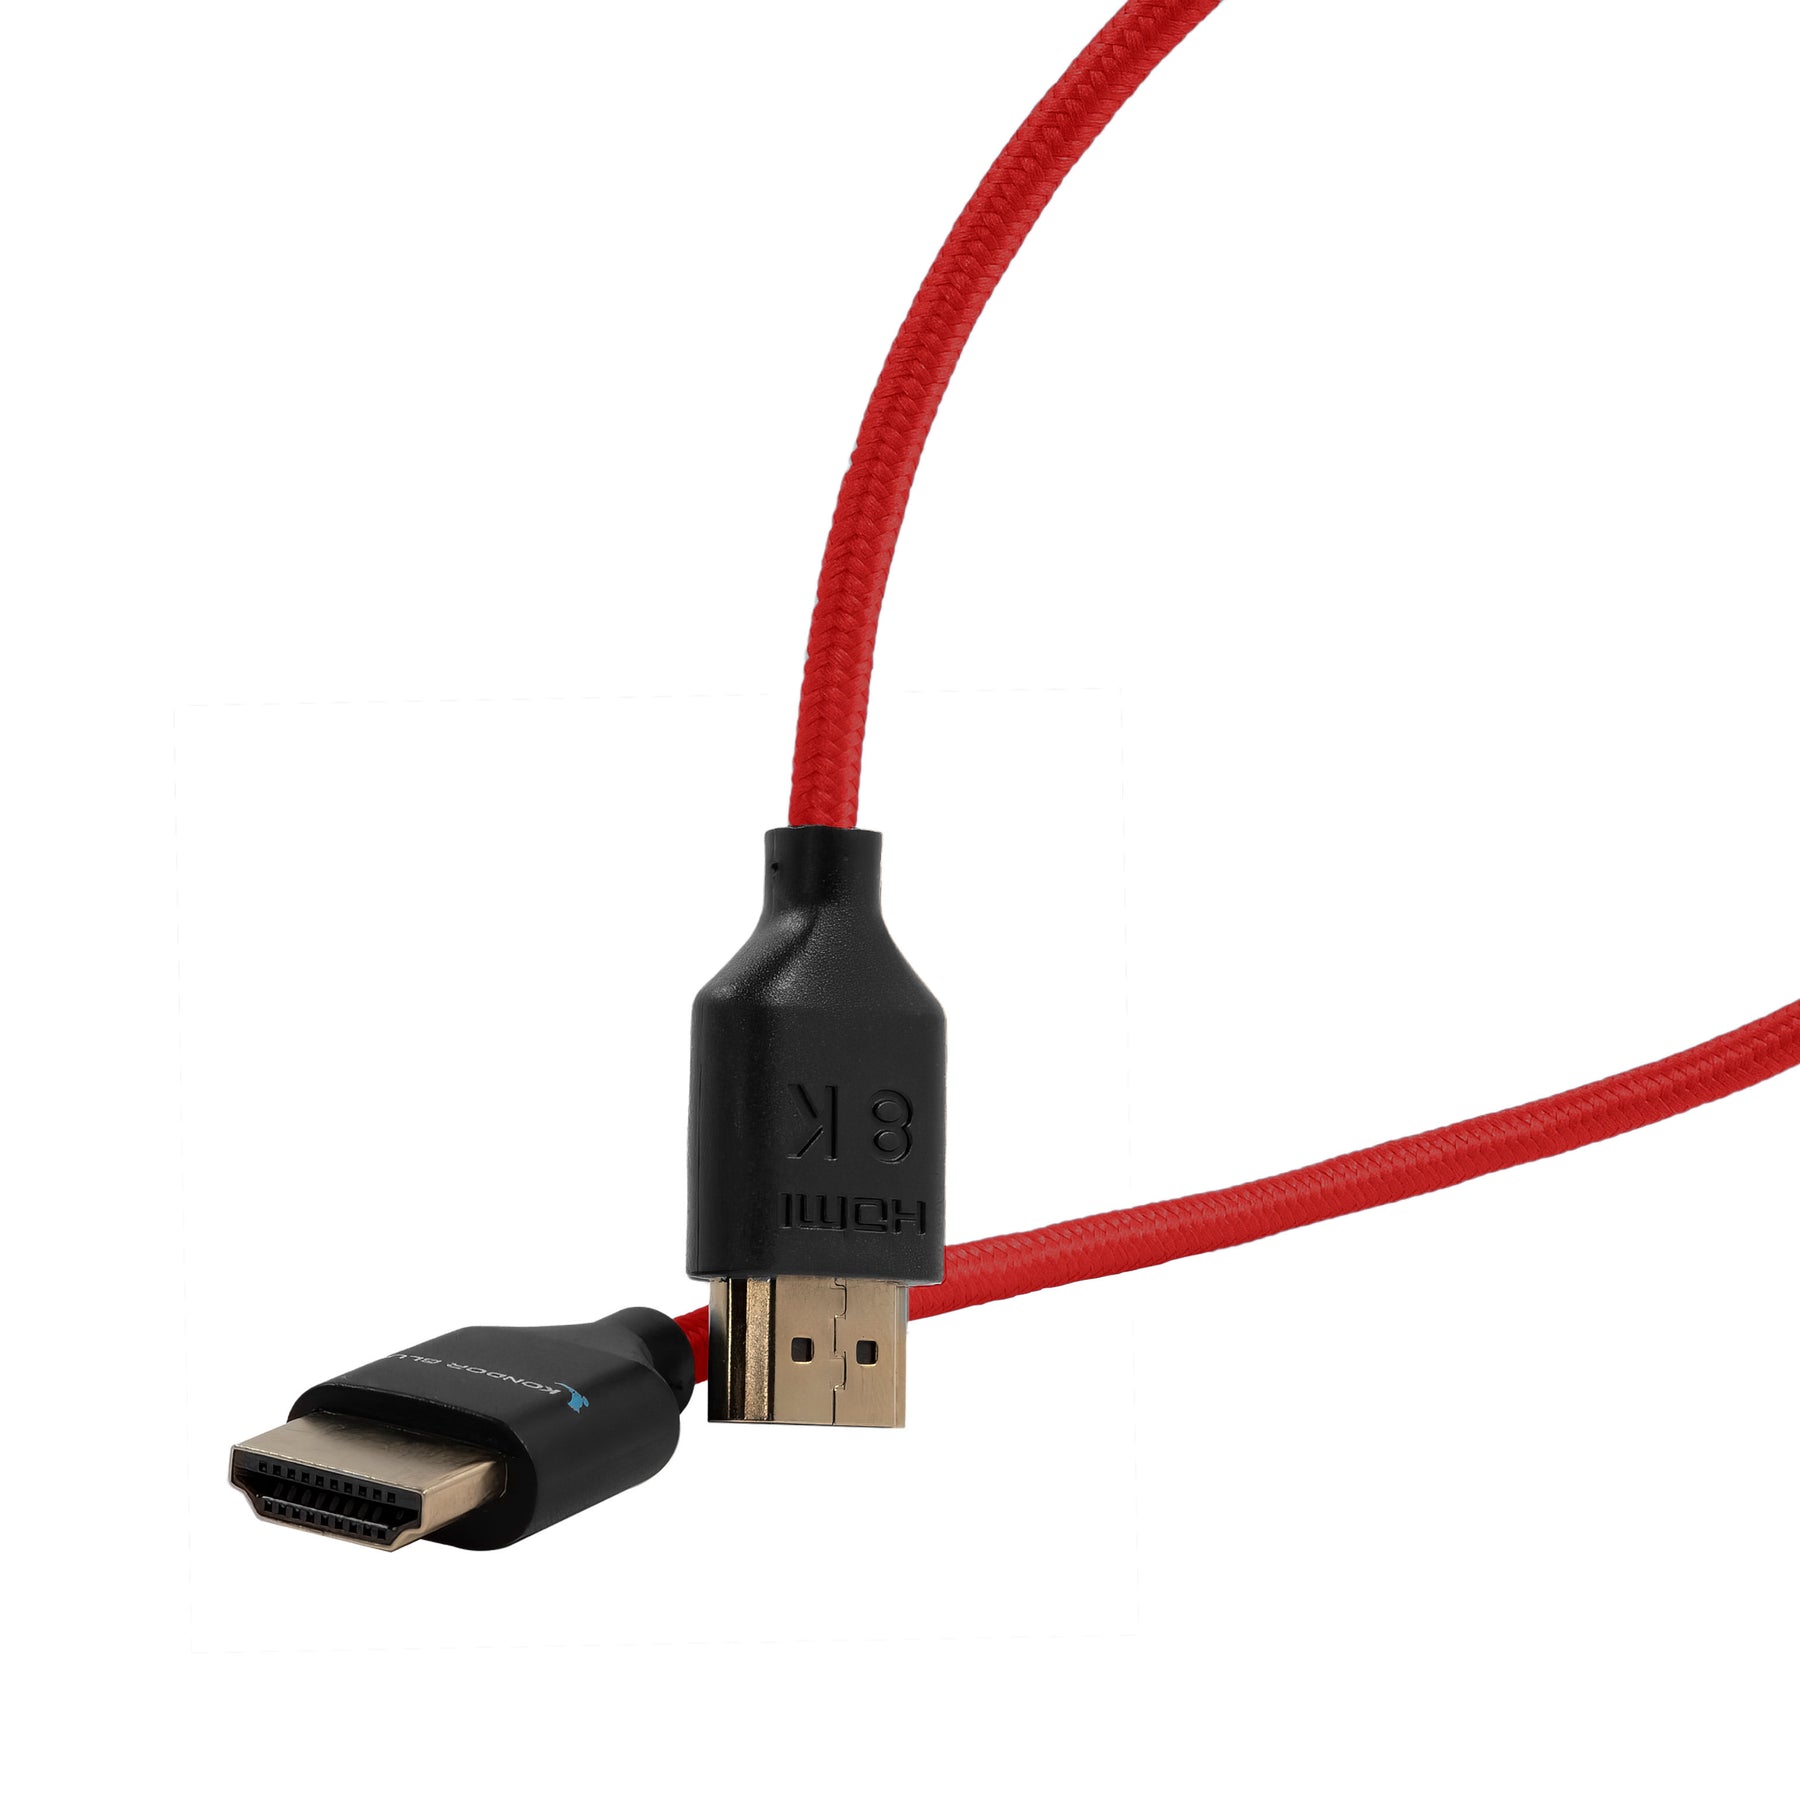 Cable HDMI 2.1 8K - 3m., Radarshop, Correos Market